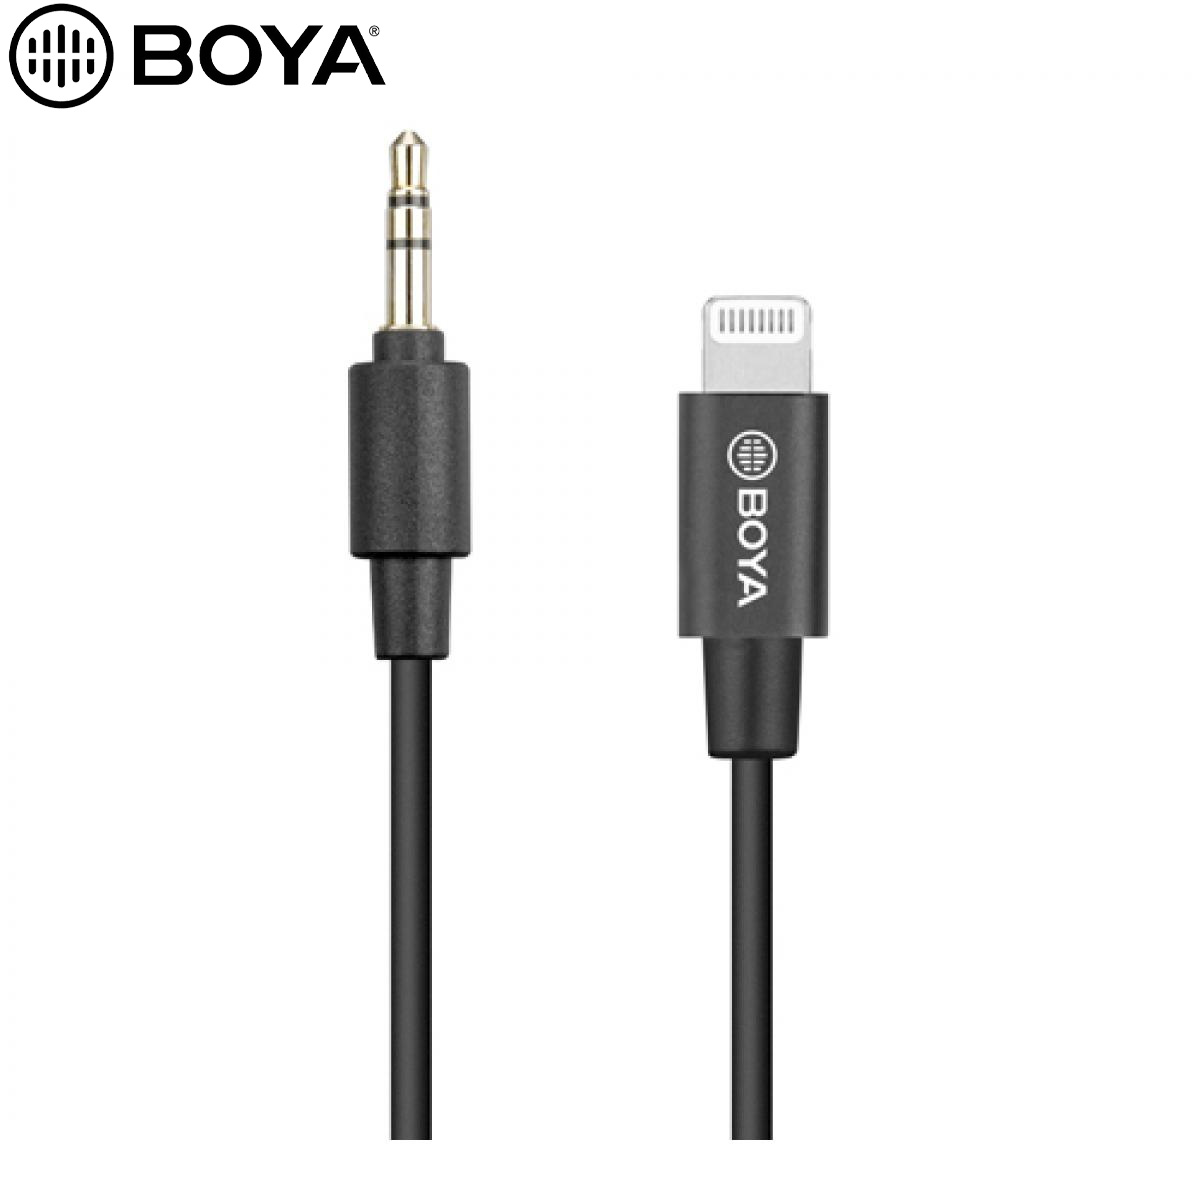 BOYA BY-K1 - 3.5mm TRS (Male) to Lightning (Male) Audio Adapter